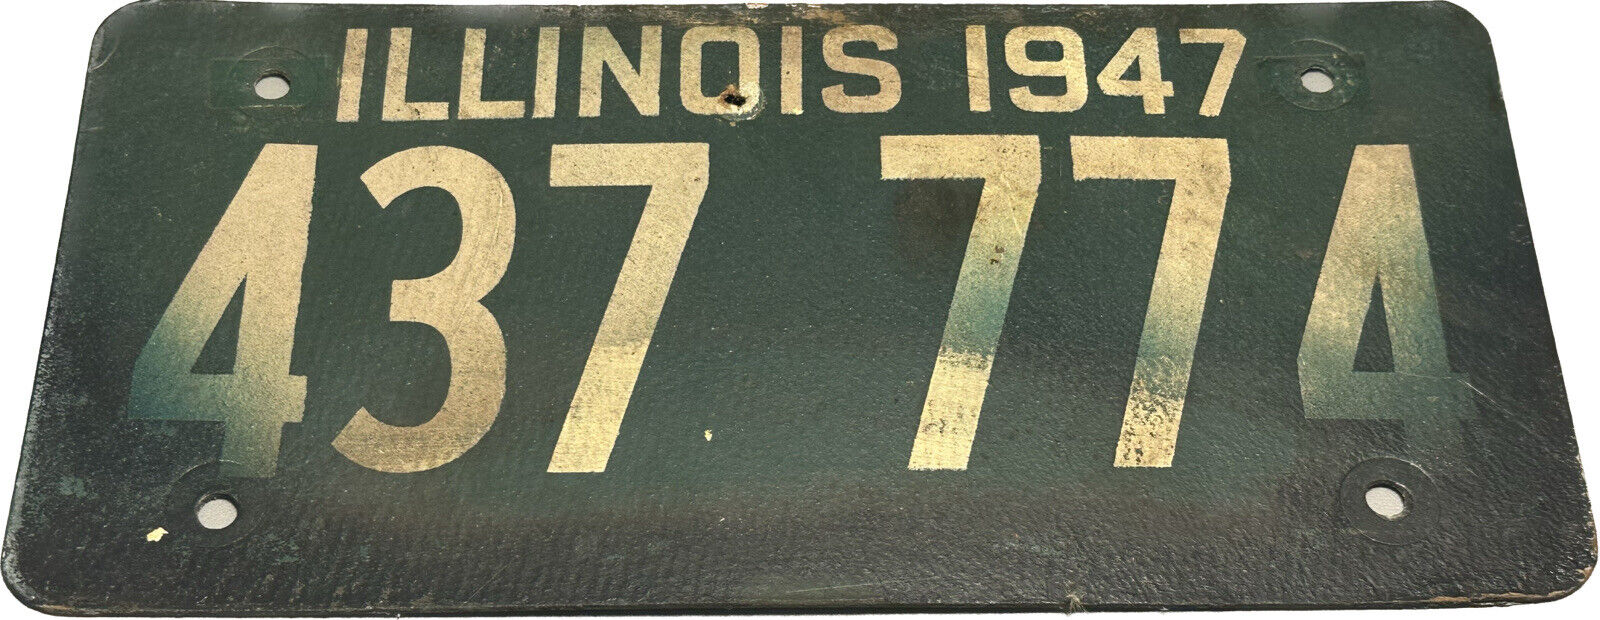 1947 Illinois license plate IL 47 fiber board